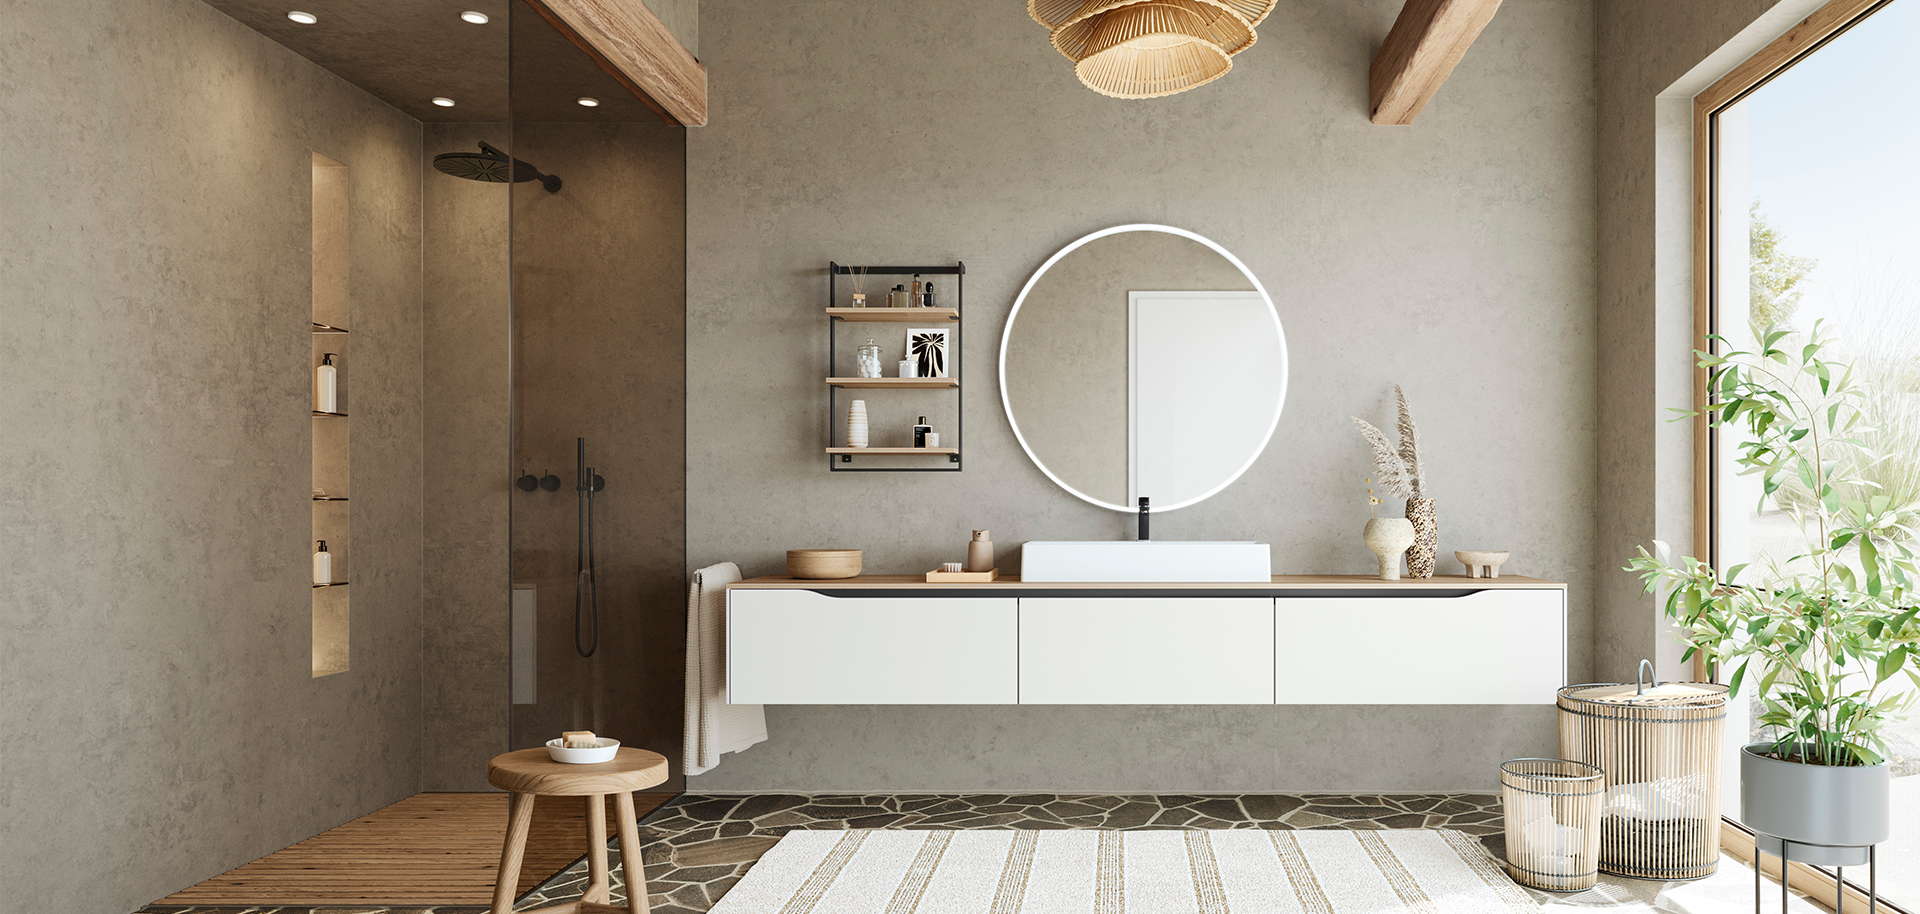 Conception de salle de bain minimaliste avec une vanité flottante, un miroir rond et des accents naturels pour un espace serein et élégant.